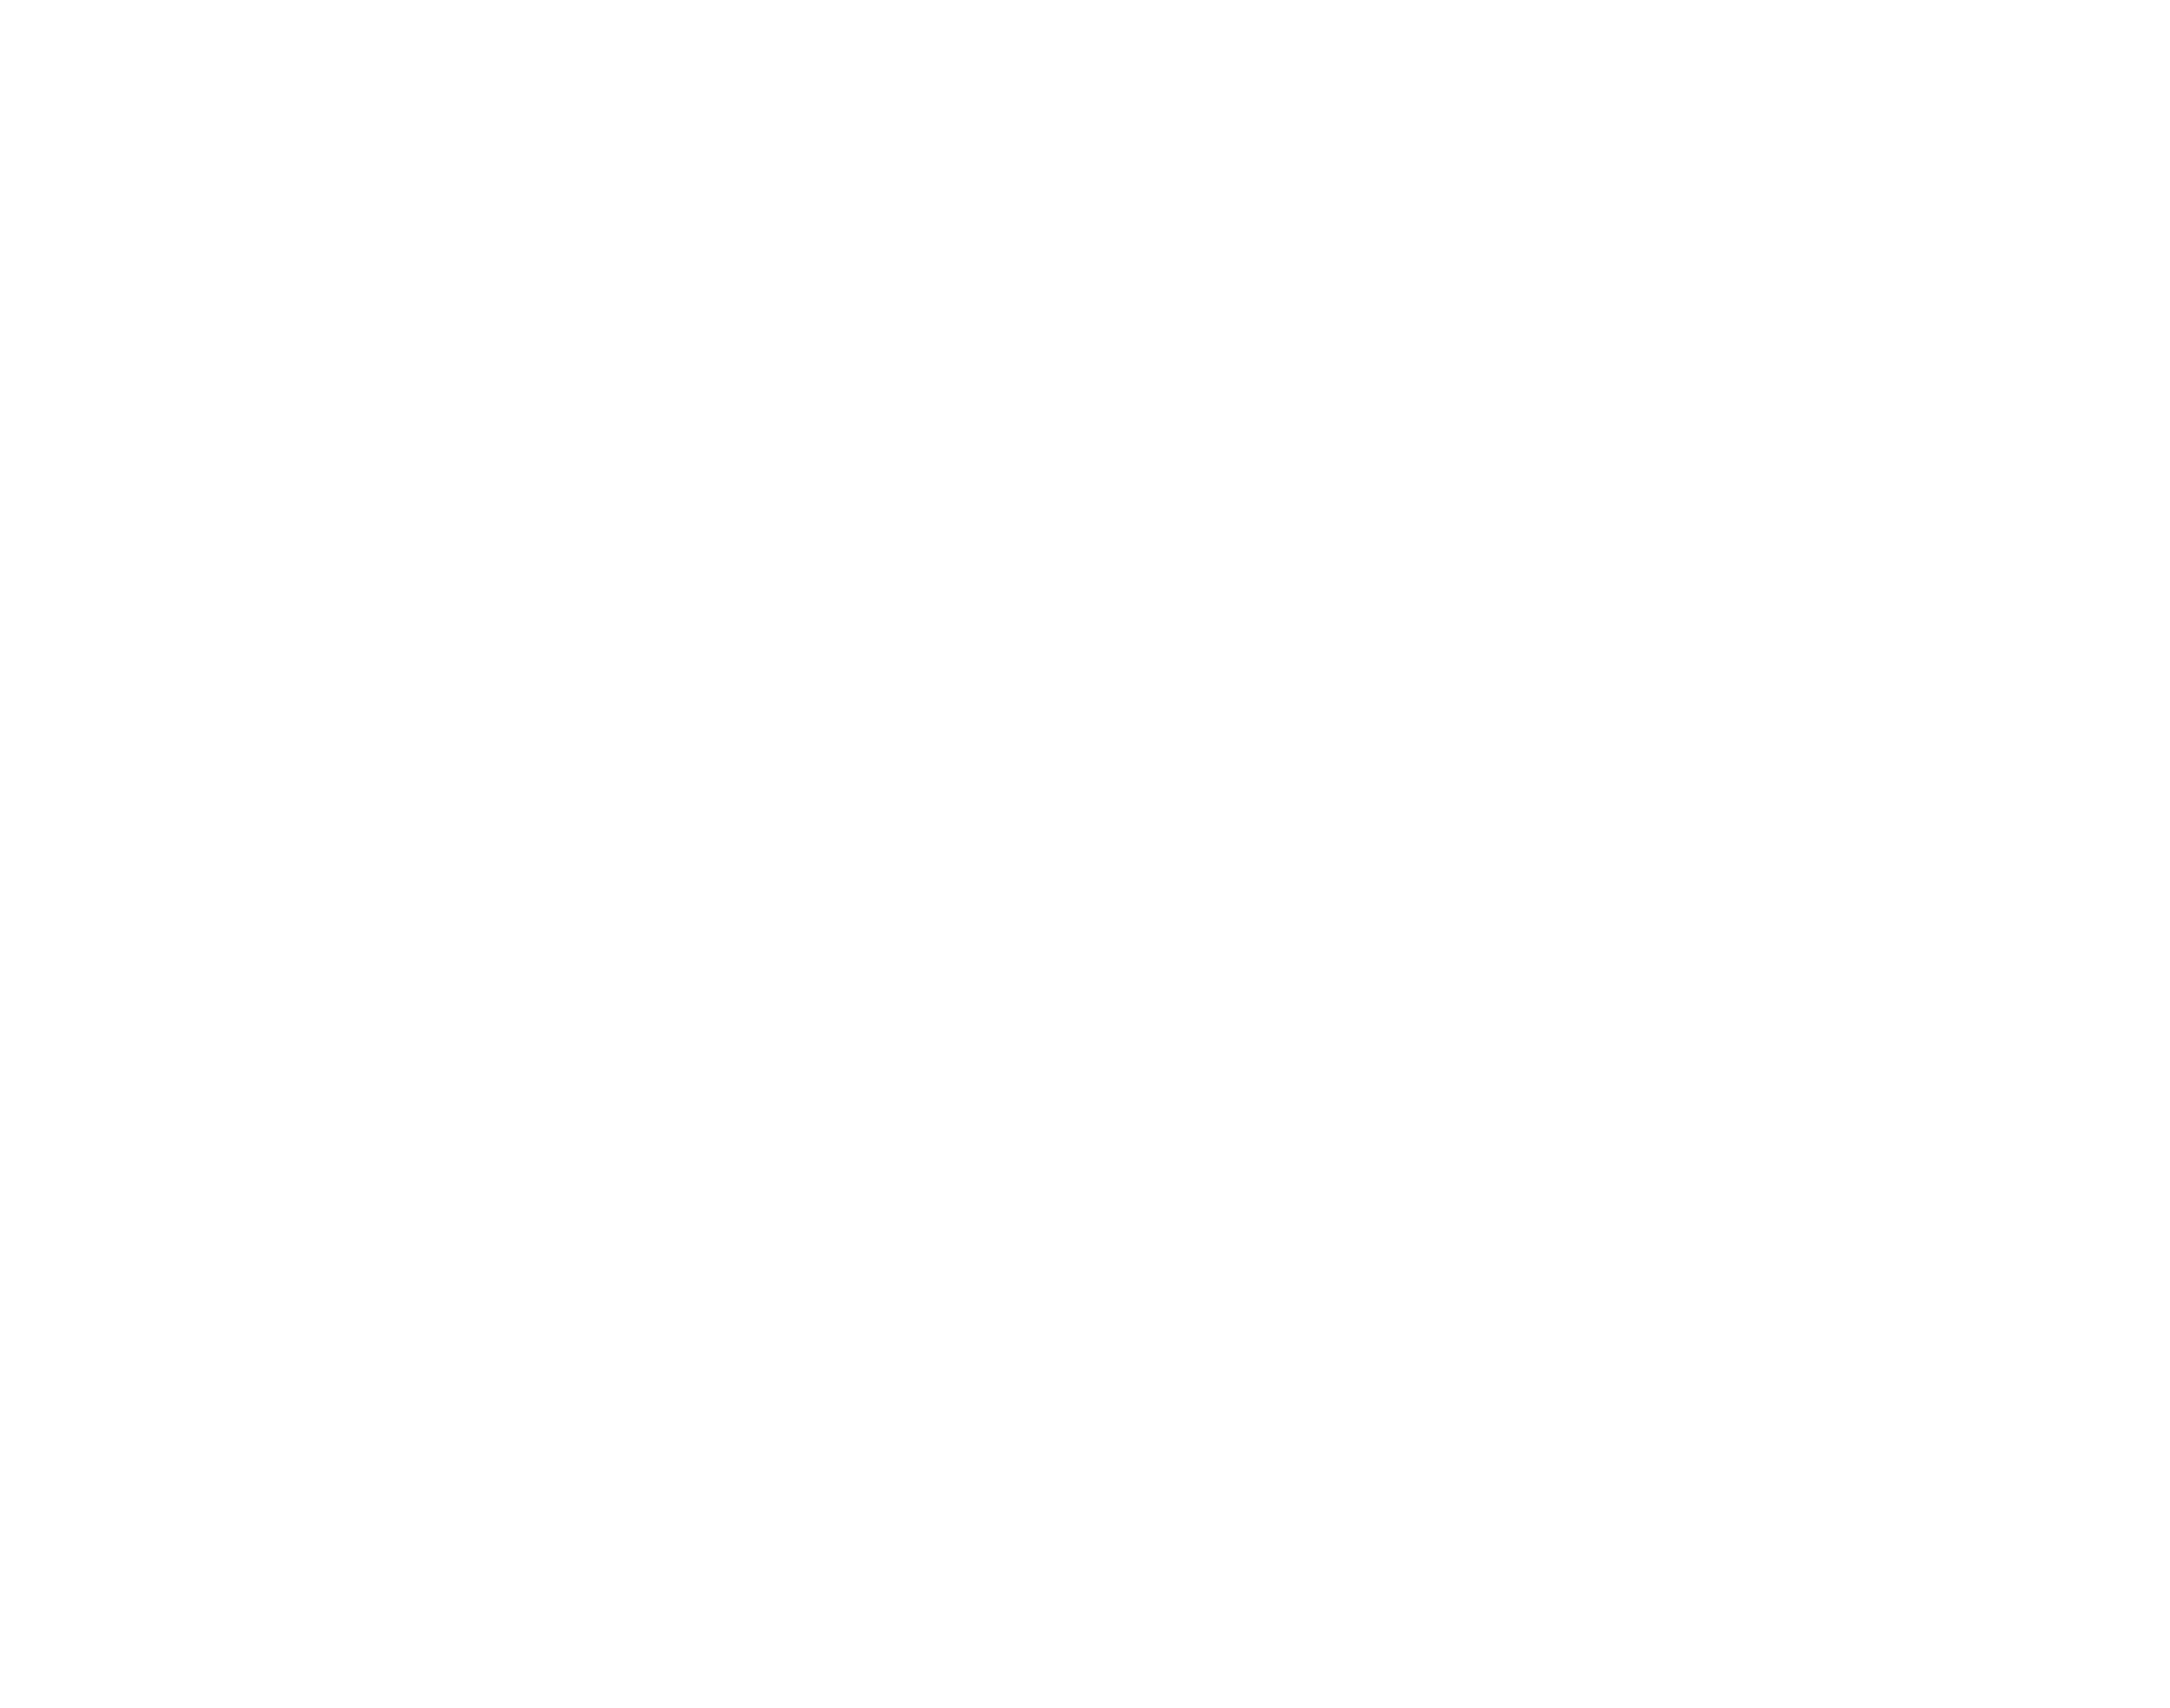 Not just warehousing